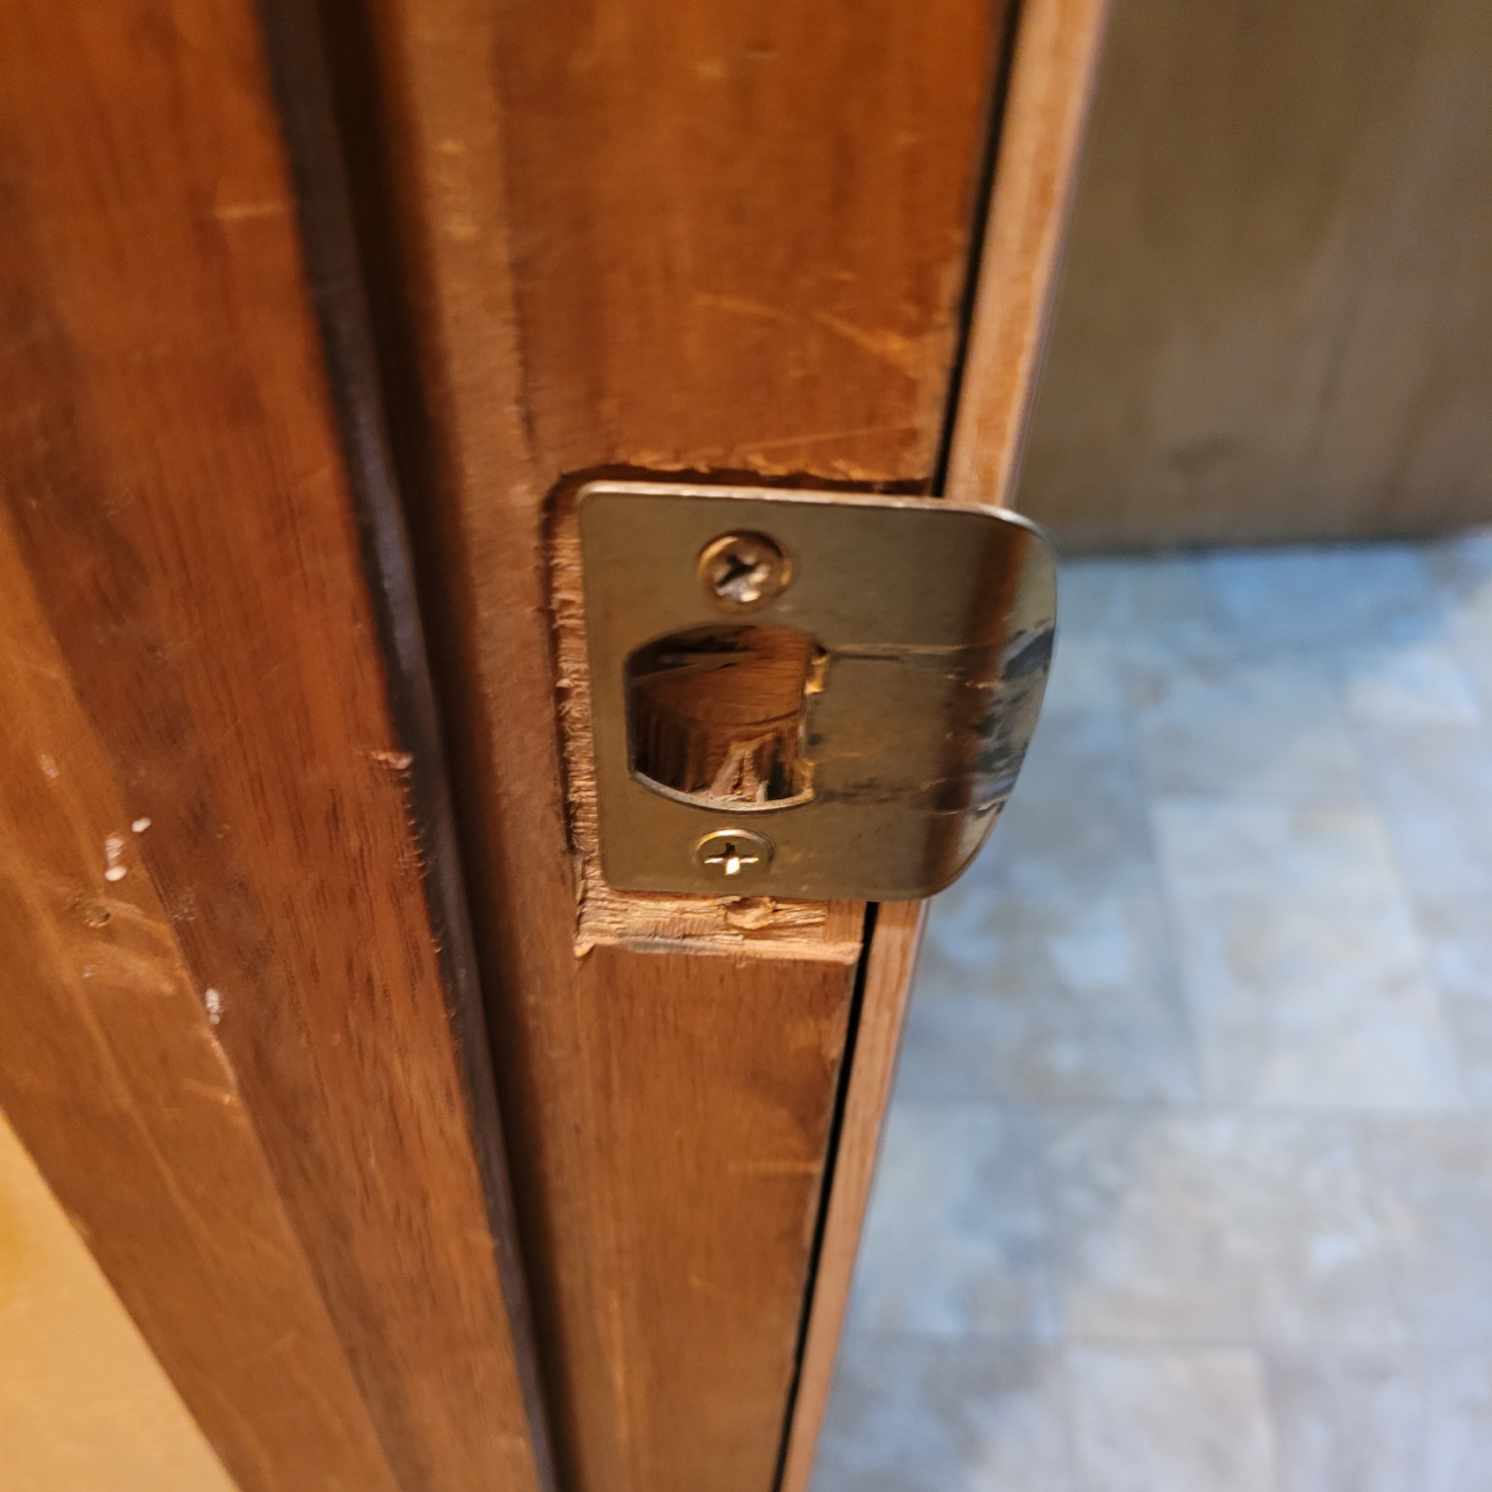 How To Adjust Door Latch How to Adjust a Door Latch So Your Door Closes Properly - ManMadeDIY